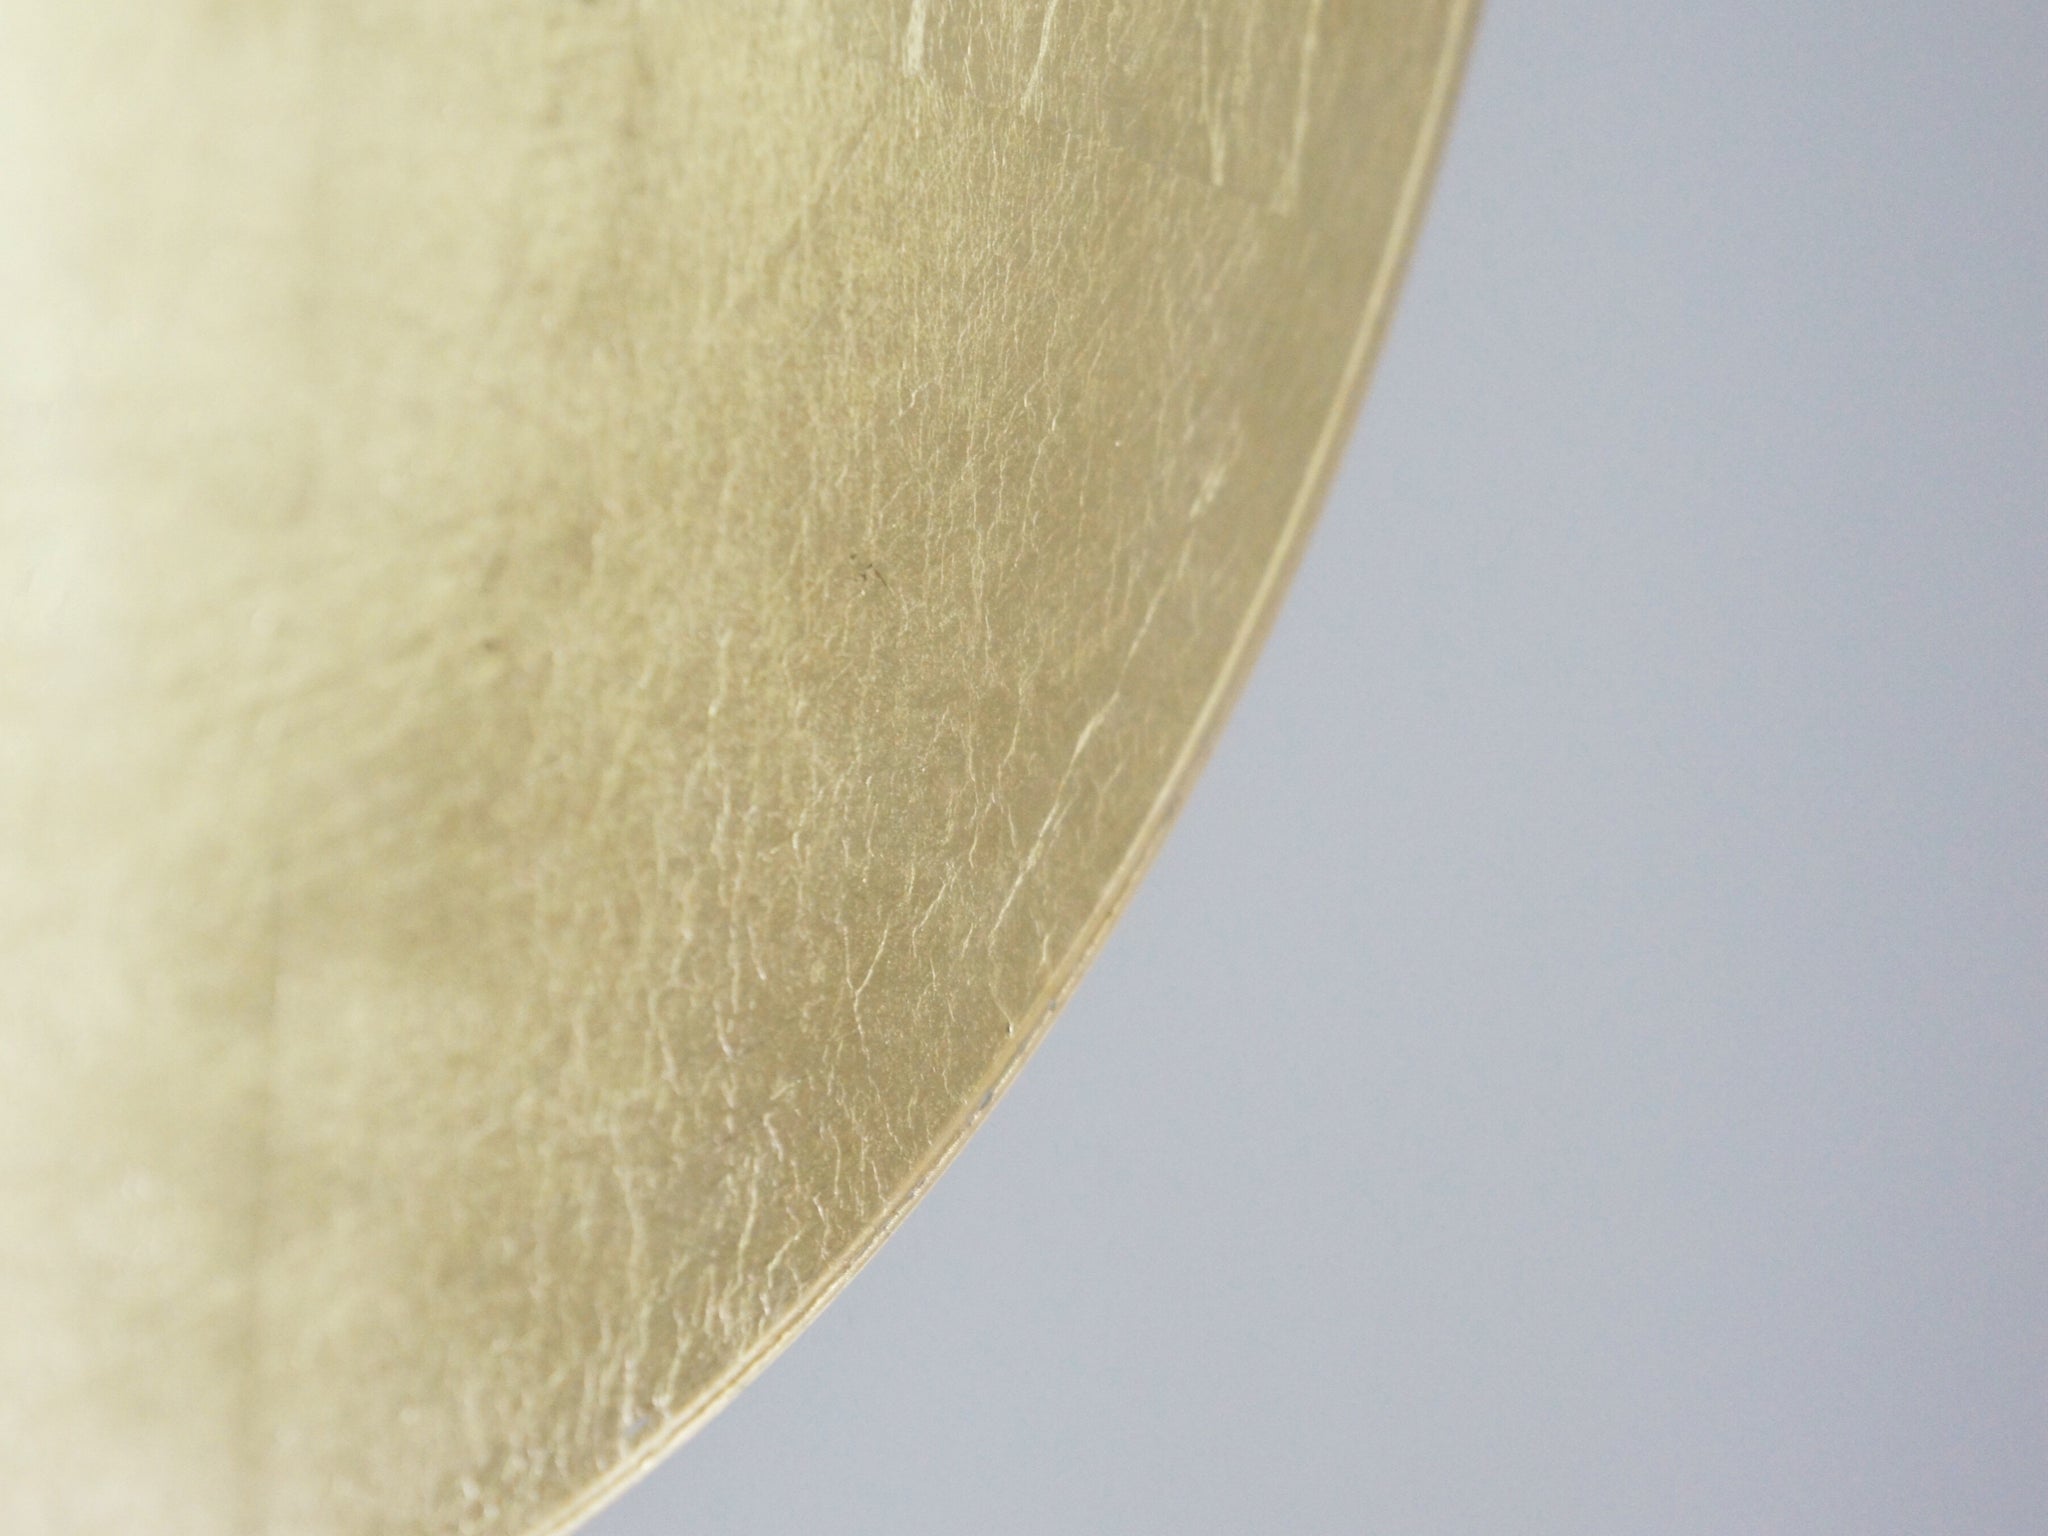 gold Blattmetall Blattgold messing glänzend Wanduhr handgemacht Unikat lautlos metal leafs brass wall clock art kunstwerk einzigartig unique einzelstück